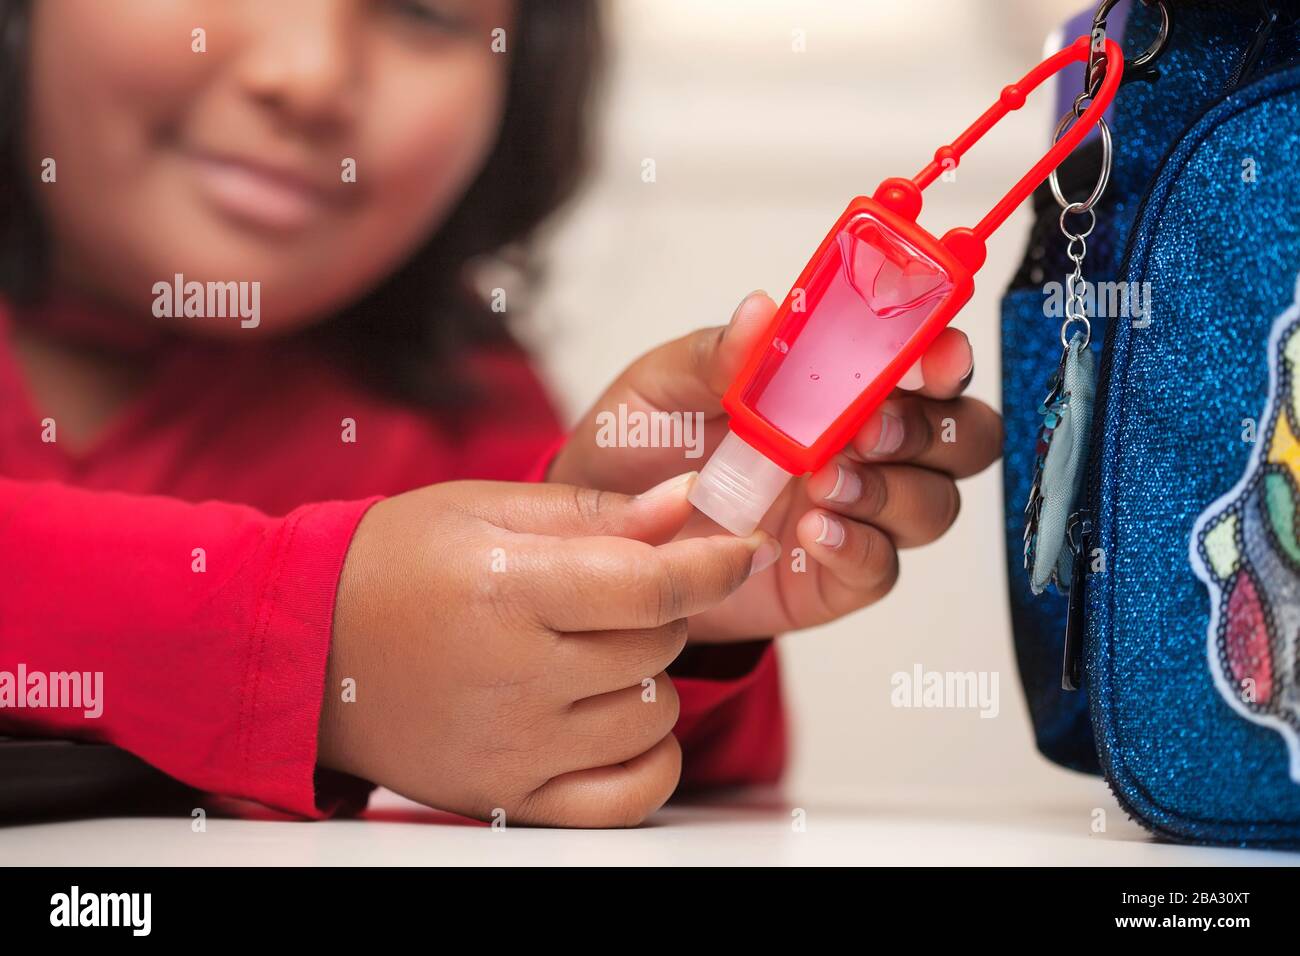 Un étudiant latino atteignant ouvrir un petit désinfectant pour les mains à base de gel à base d'alcool qui est fixé à son sac à dos. Banque D'Images